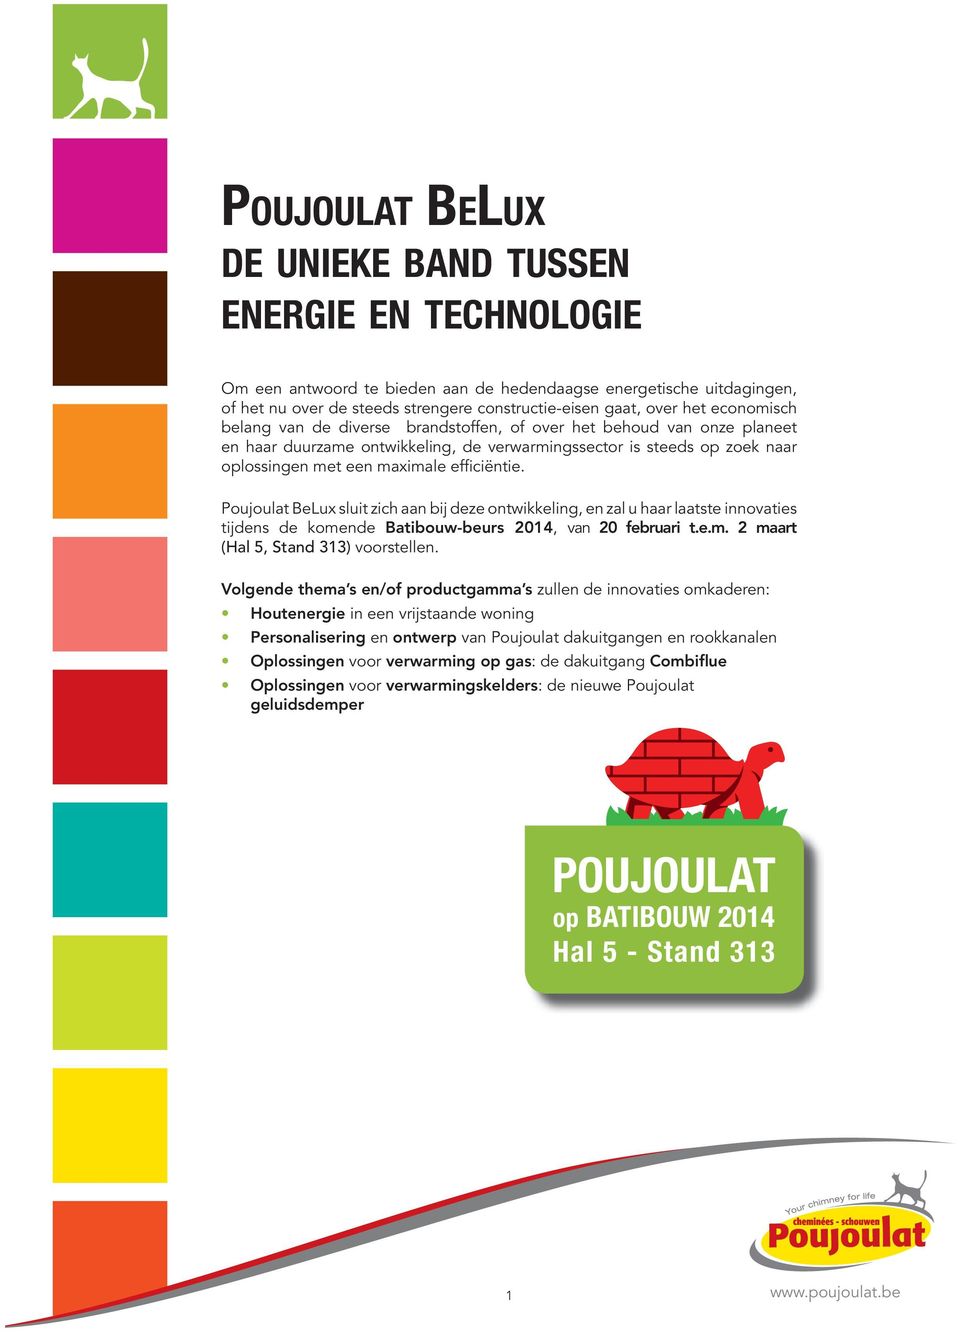 Poujoulat BeLux sluit zich aan bij deze ontwikkeling, en zal u haar laatste innovaties tijdens de komende Batibouw-beurs 2014, van 20 februari t.e.m. 2 maart (Hal 5, Stand 313) voorstellen.